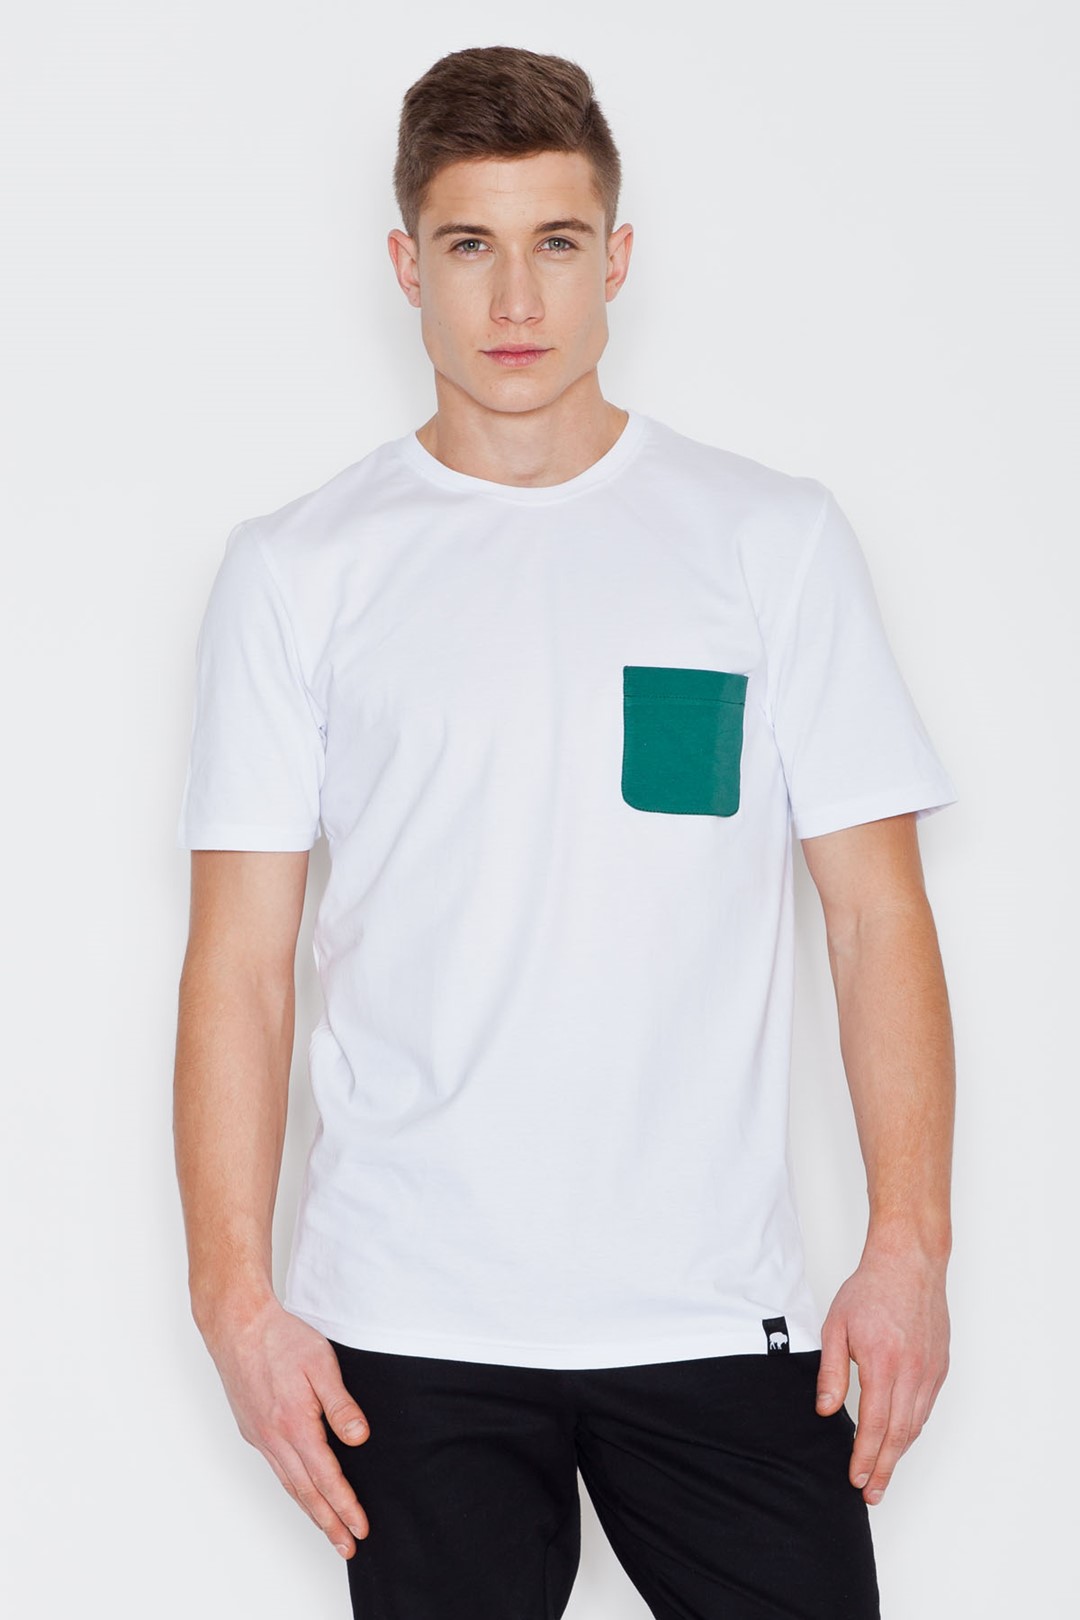 Koszulka V002 Biały L